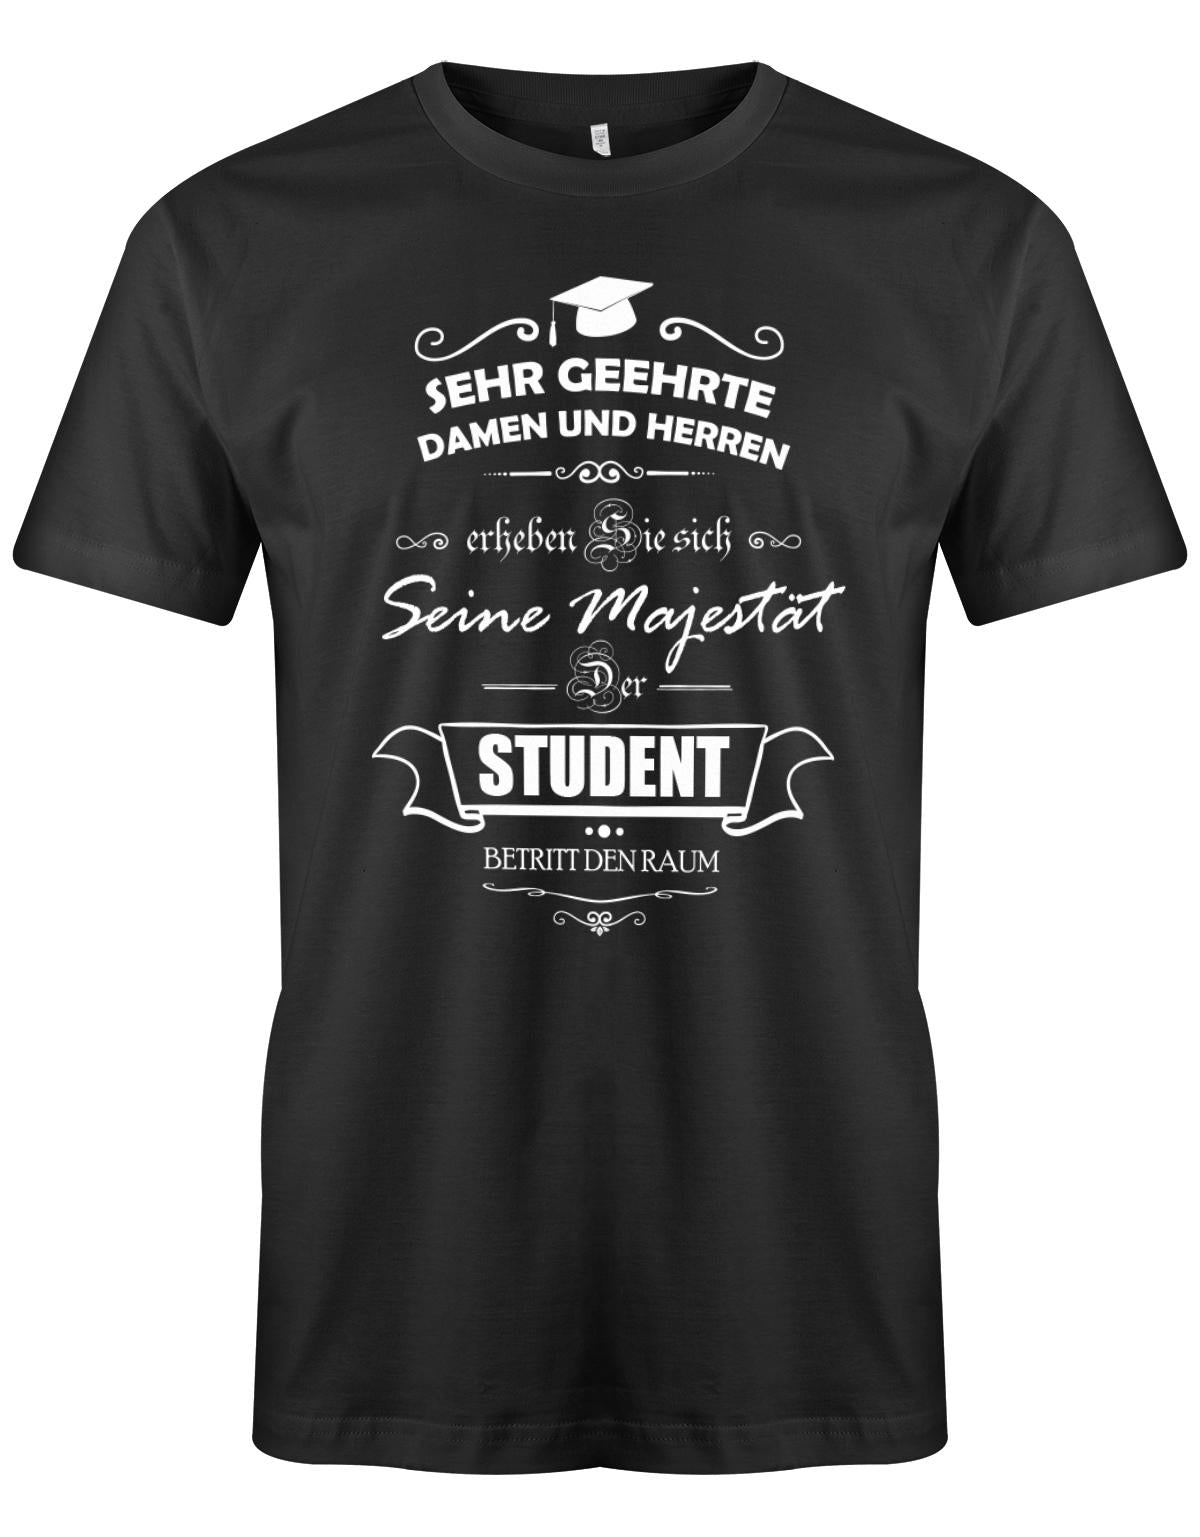 Seine-Majest-t-der-Student-betritt-den-Raum-Herren-Studium-Student-Shirt-Schwarz